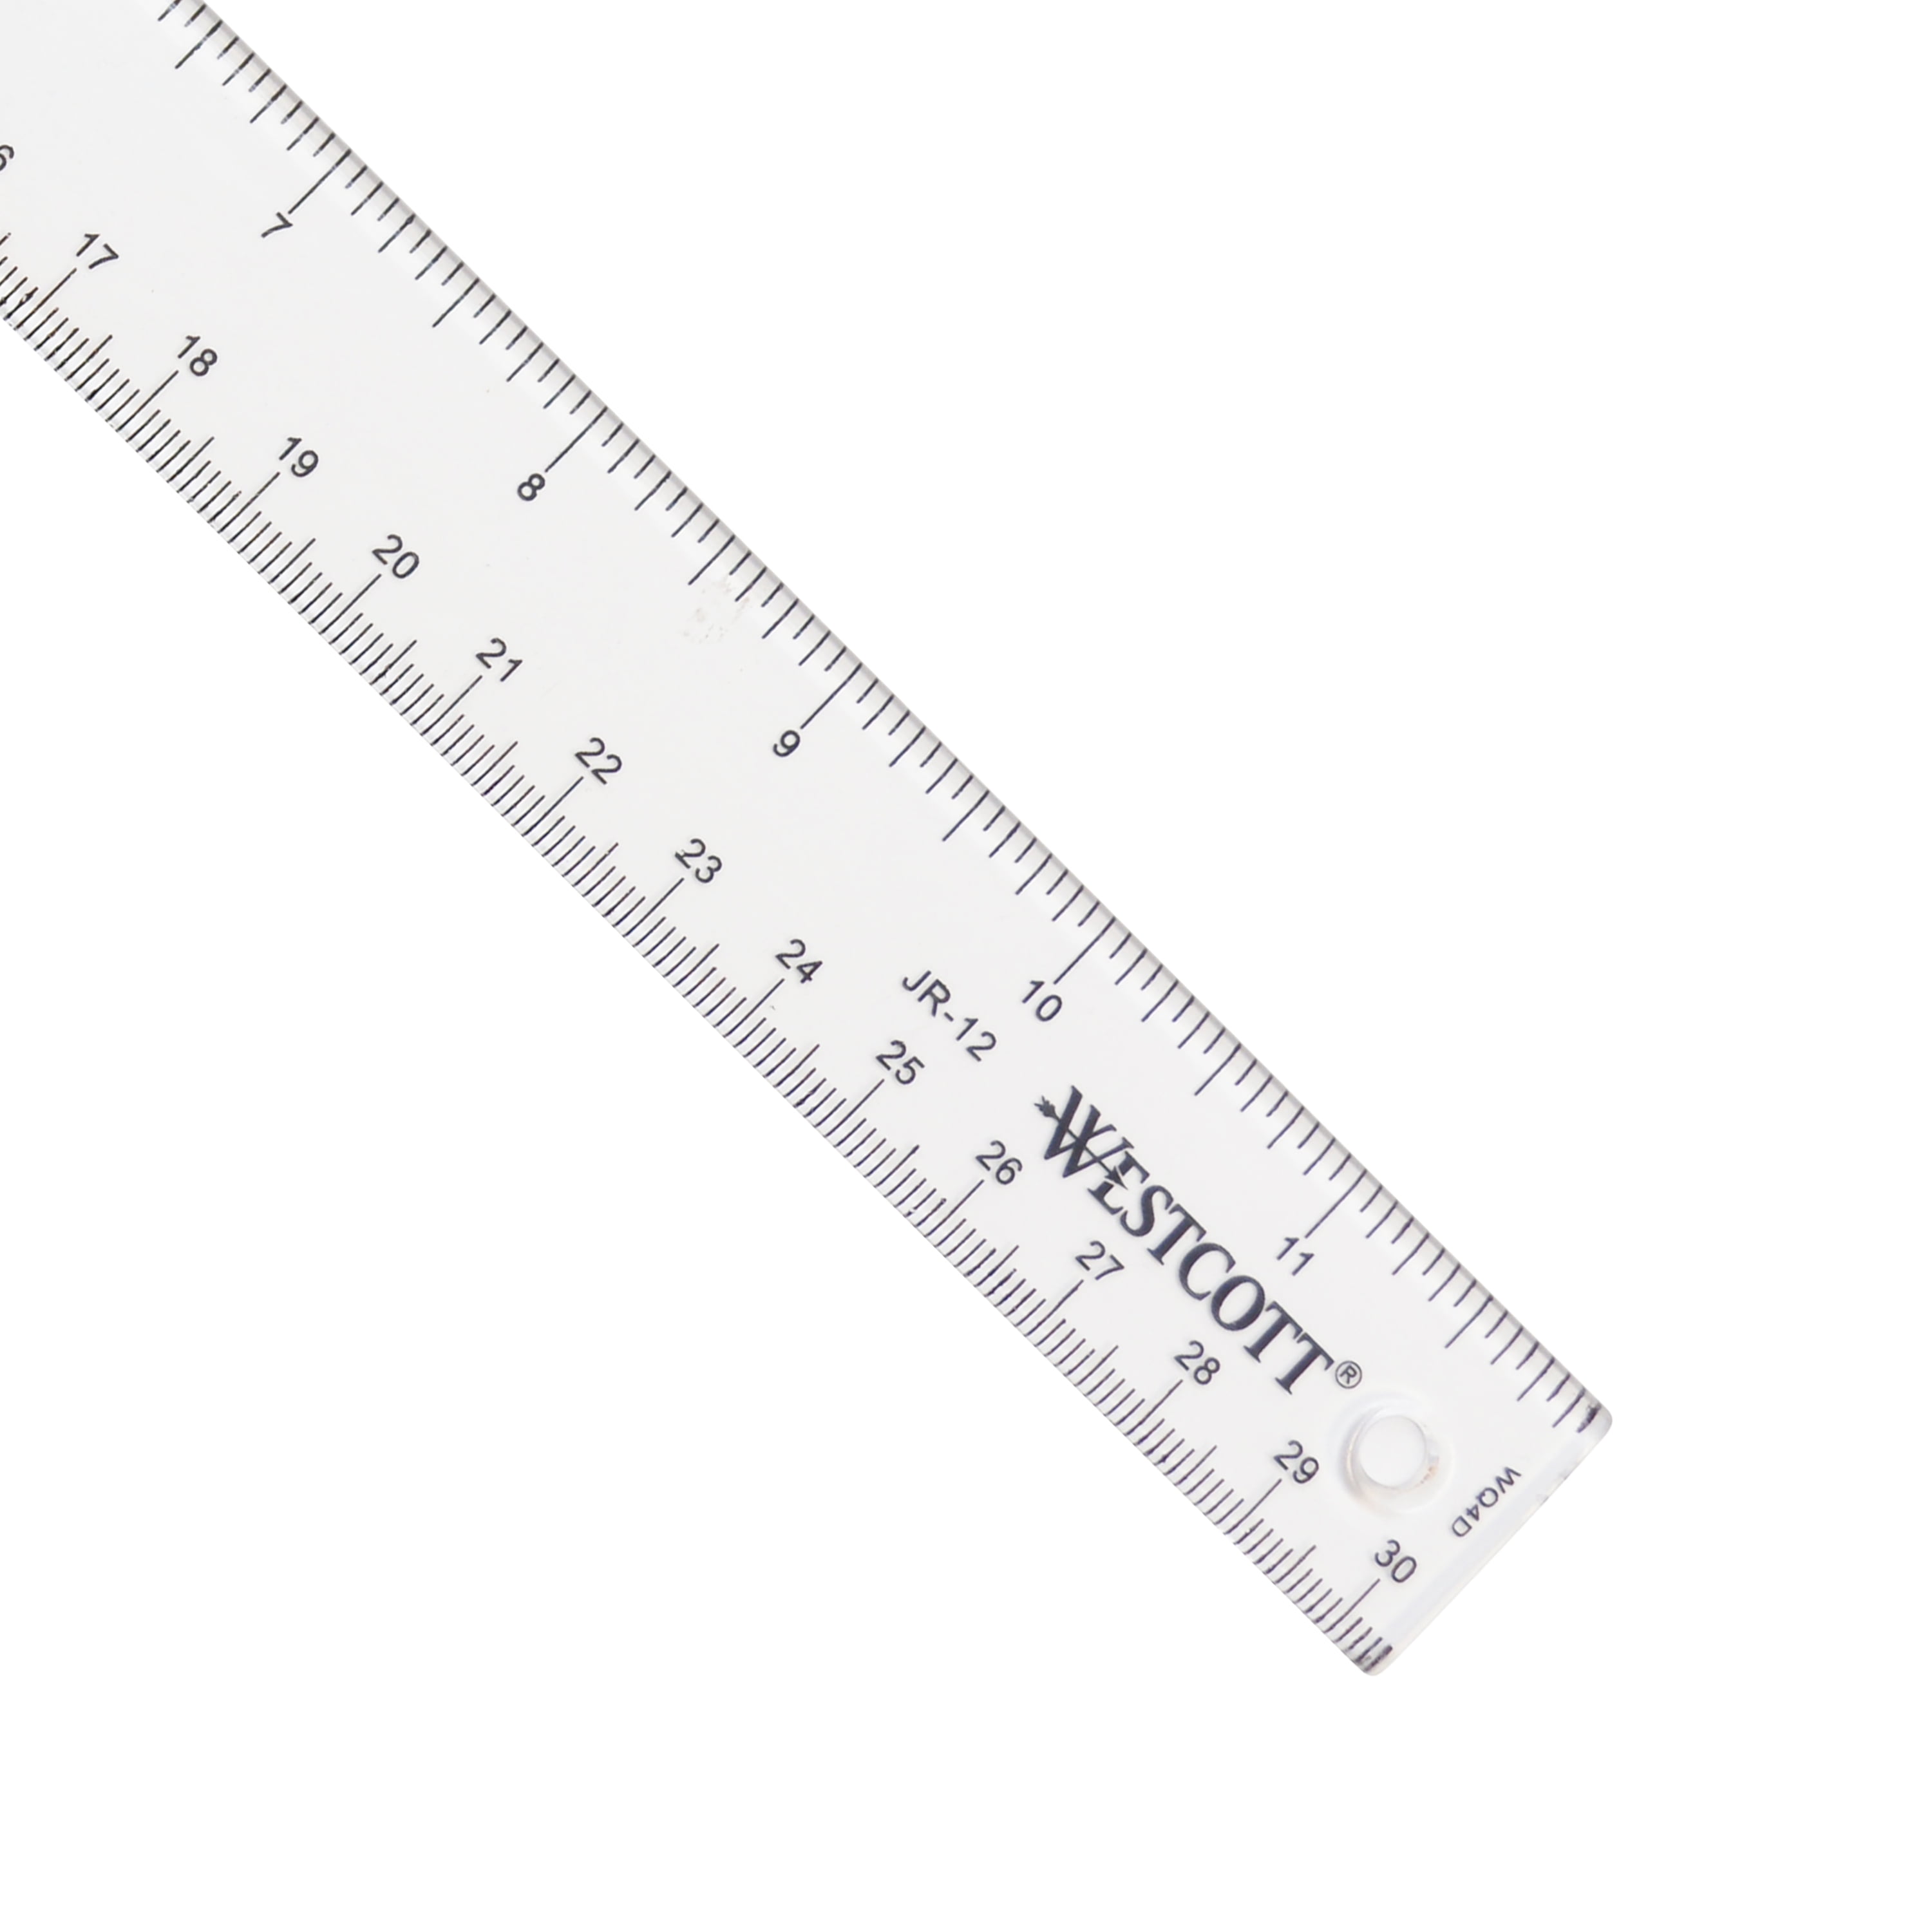 30cm Plastic Metric T Square Double Side Ruler Measuring Tool Supplies PL B E KK